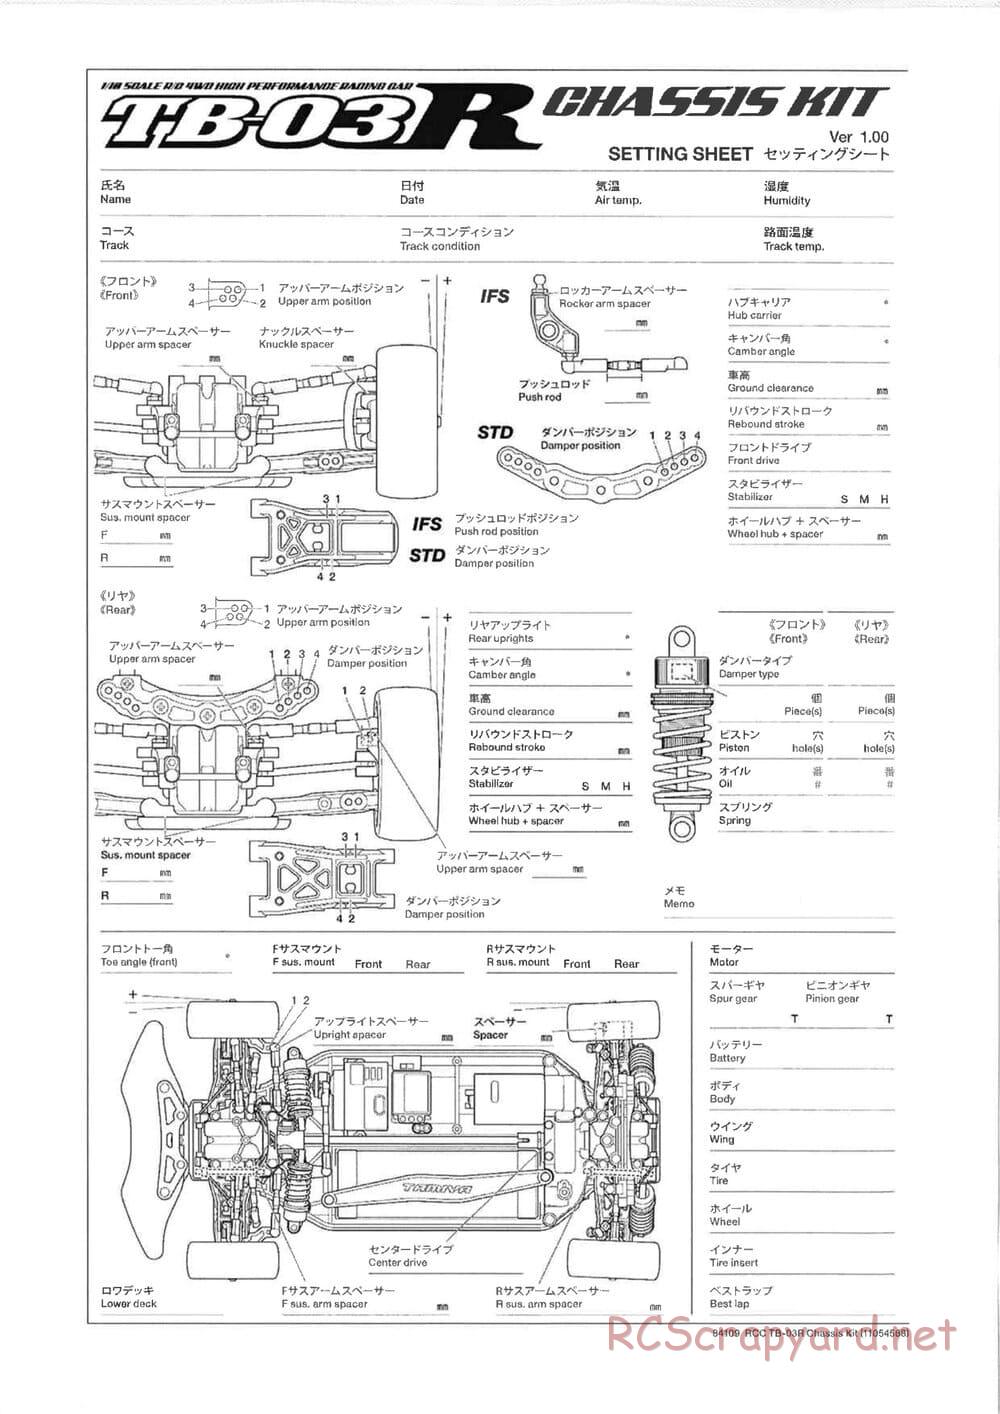 Tamiya - TB-03R Chassis - Manual - Page 21